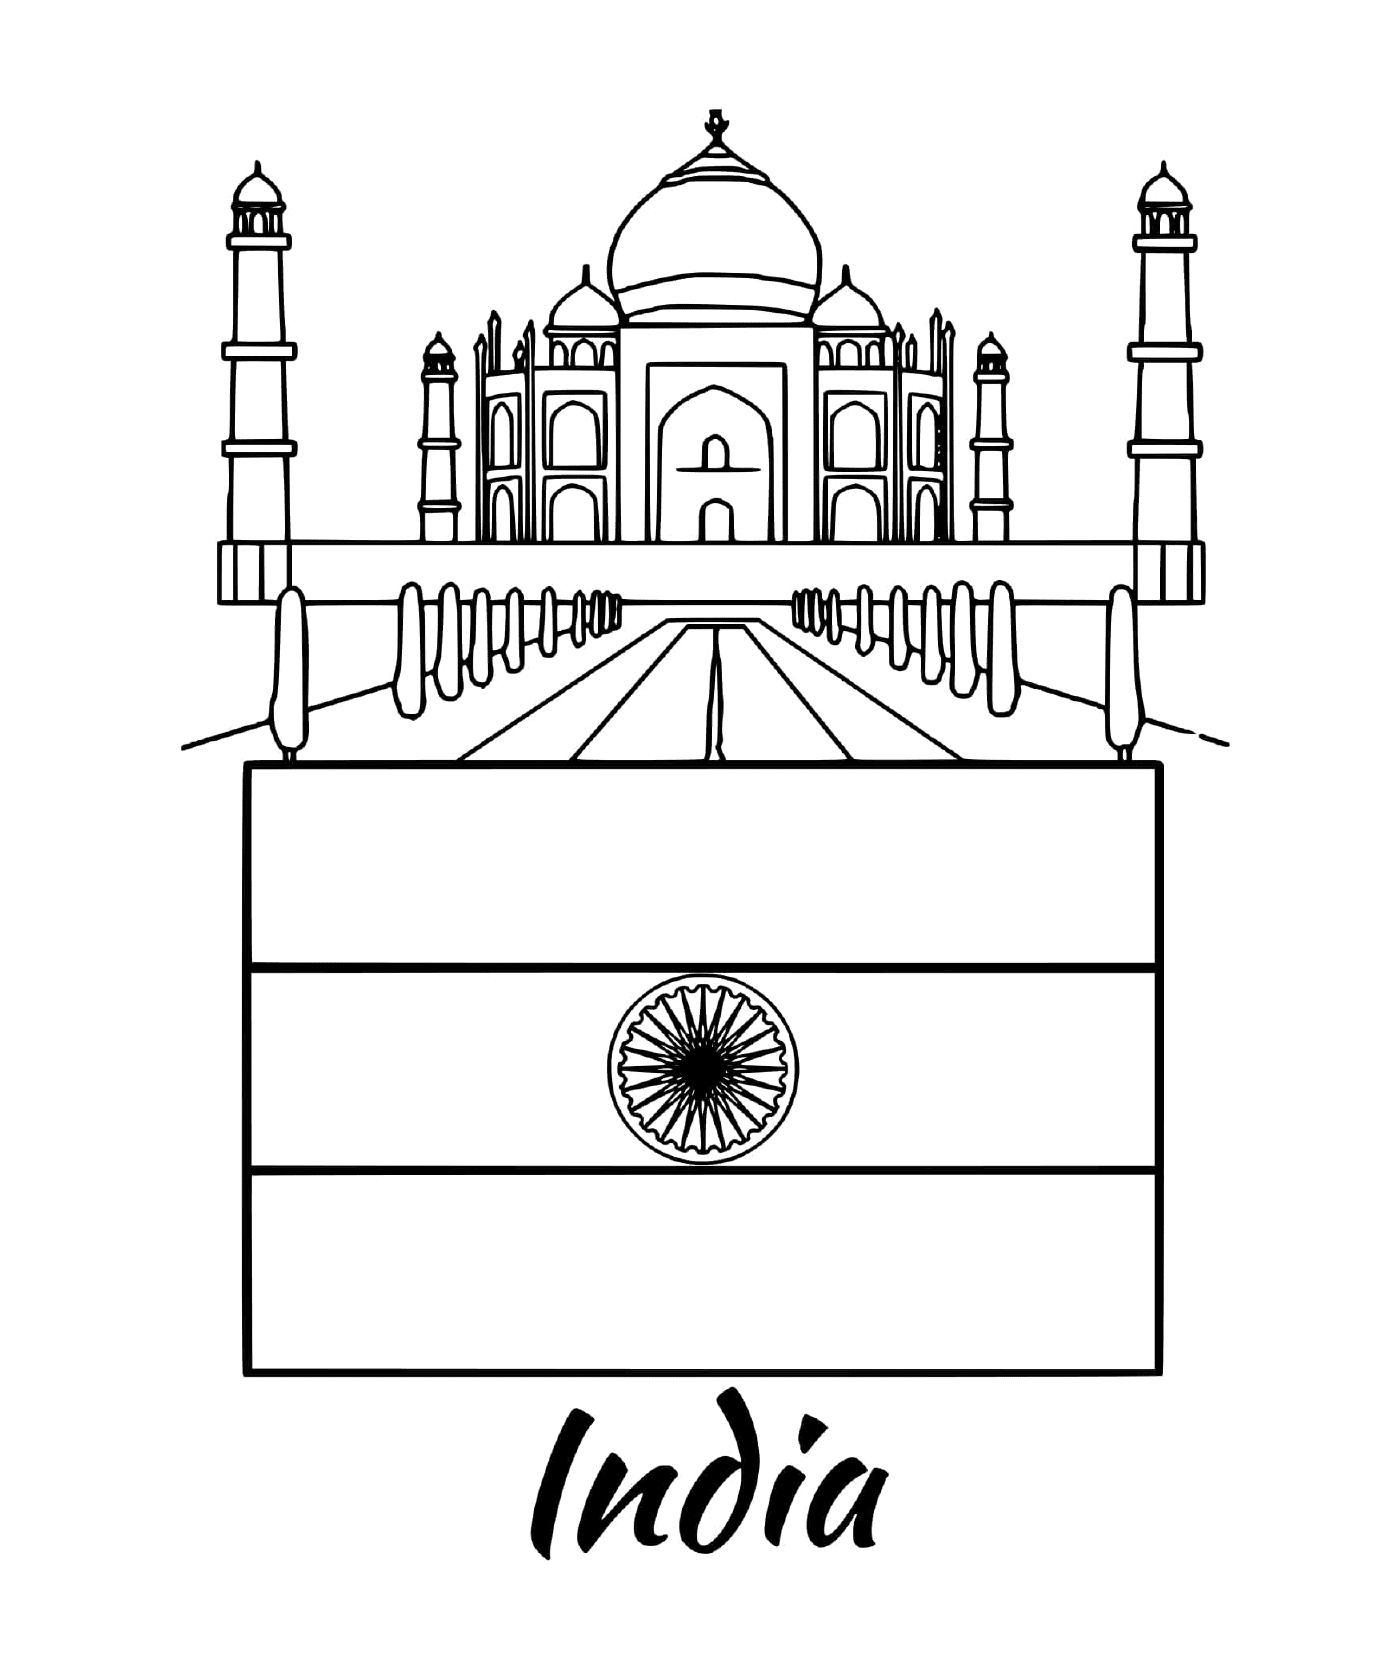  Flag of India with the Taj Mahal 